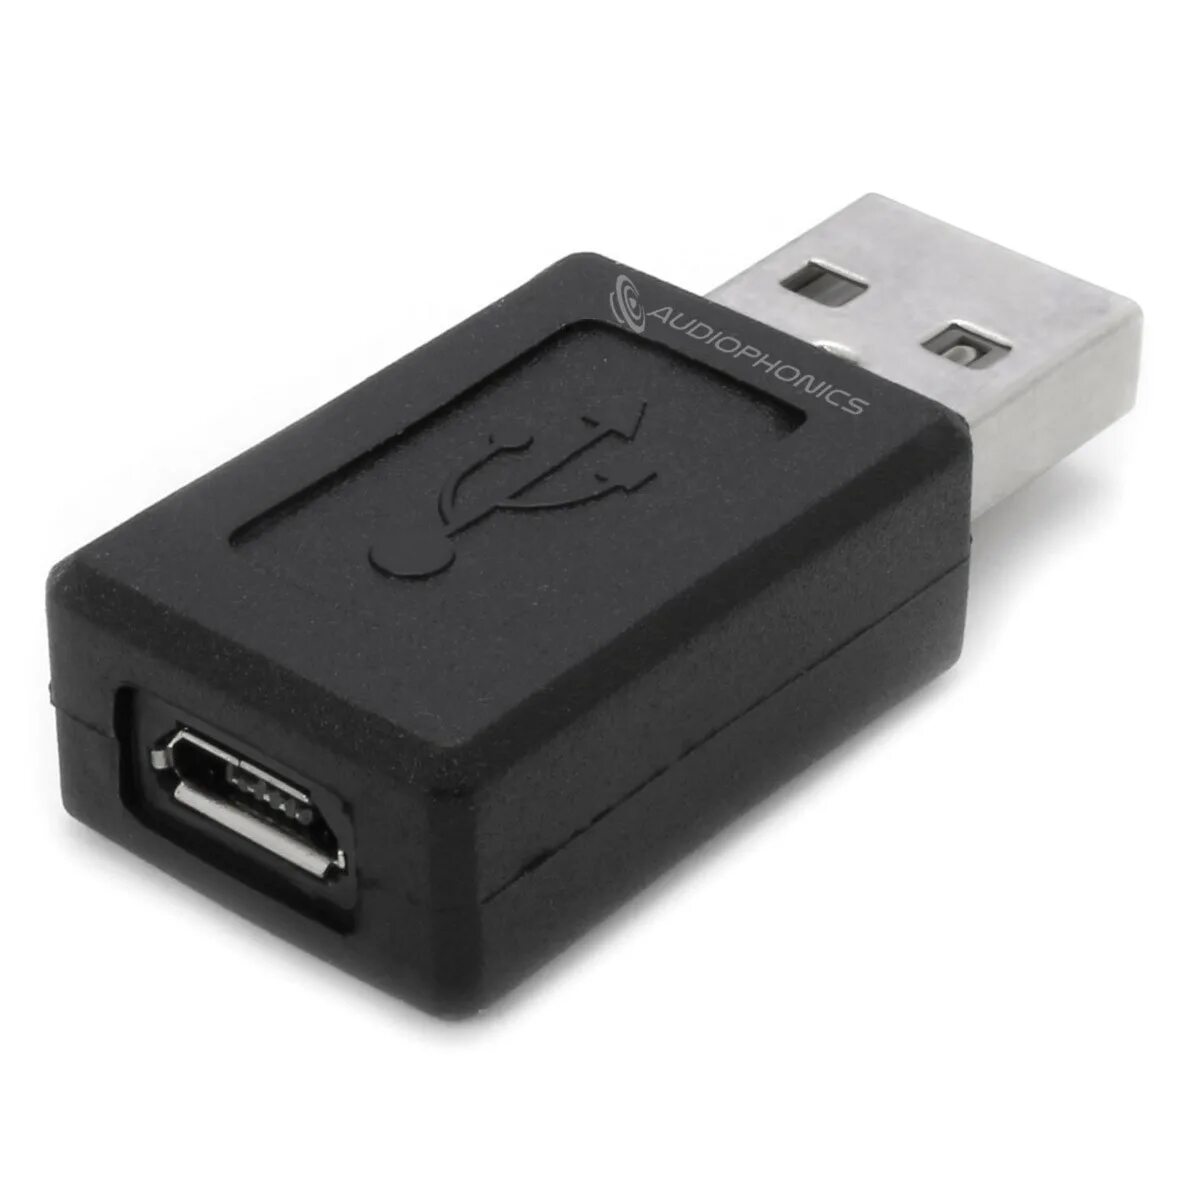 Разъем Micro USB male. Переходник Mini HDMI male на USB female. Переходник from MICROSD на USB female Type. Переходник USB на микро 14 пиновый разъем.